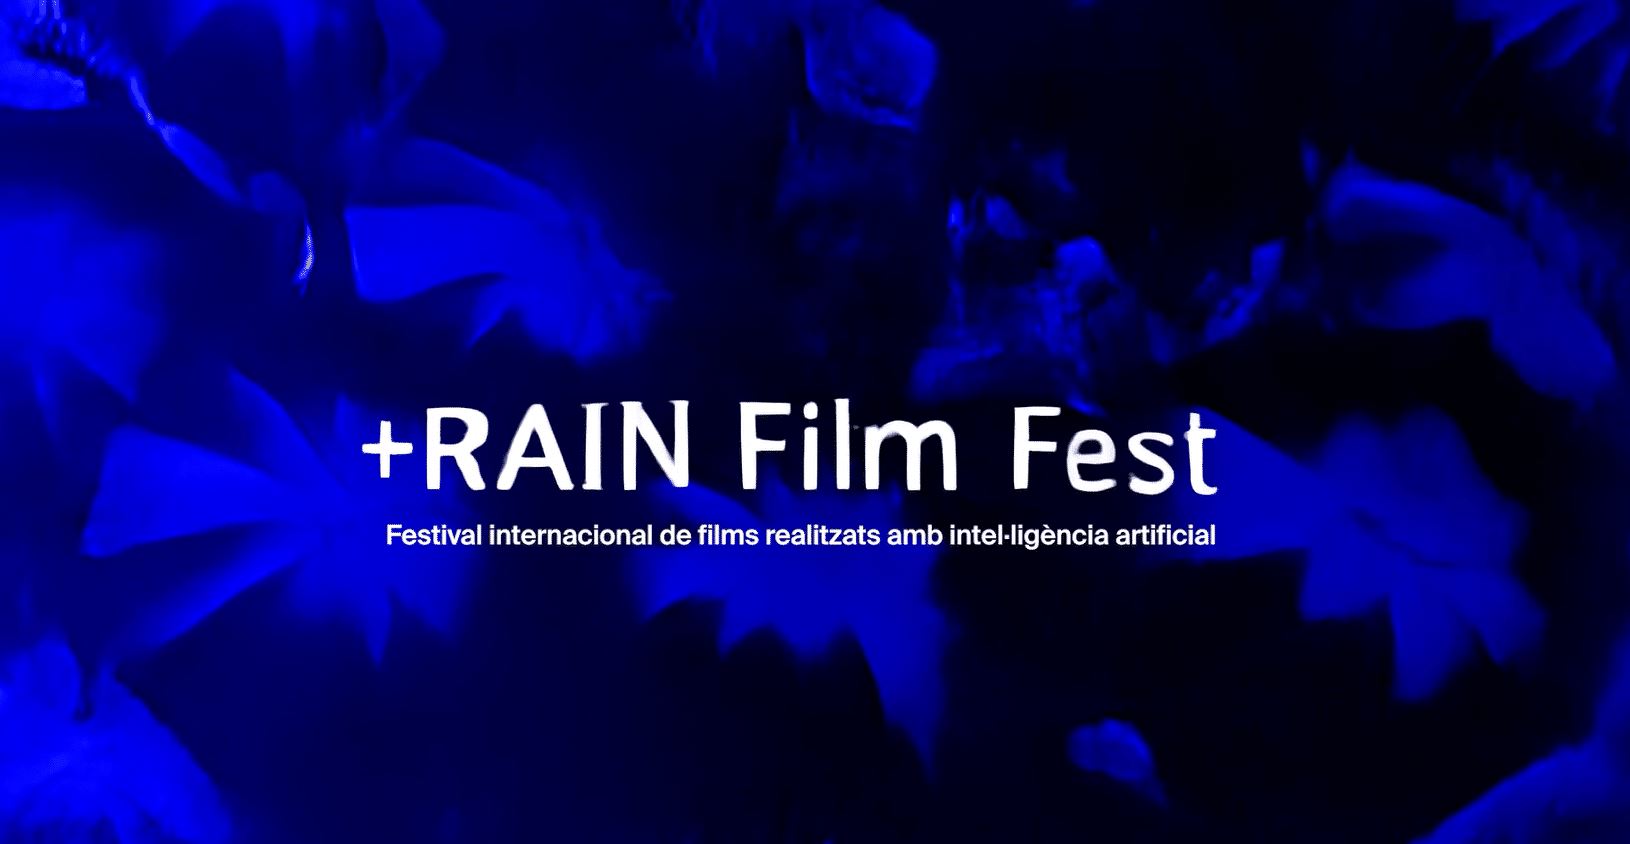 Ja estan obertes les inscripcions al +RAIN Film Fest, el primer festival a Europa de cinema amb IA